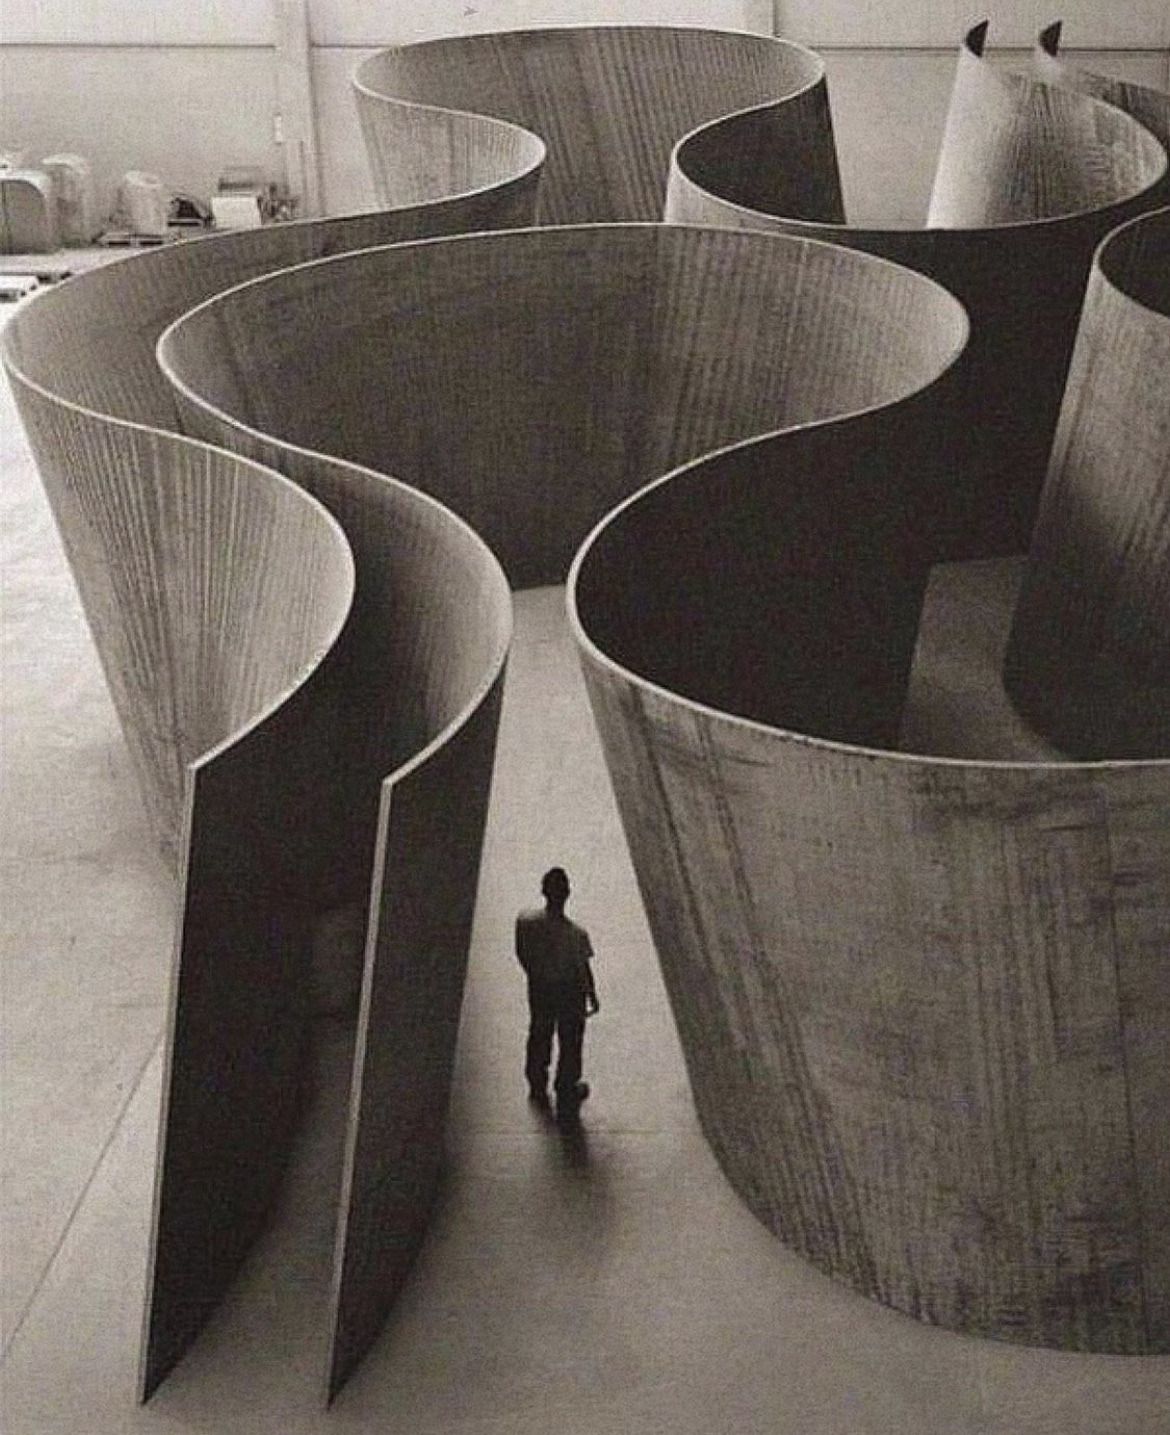 El mundo del arte lamenta la pérdida de Richard Serra, ícono del minimalismo escultórico